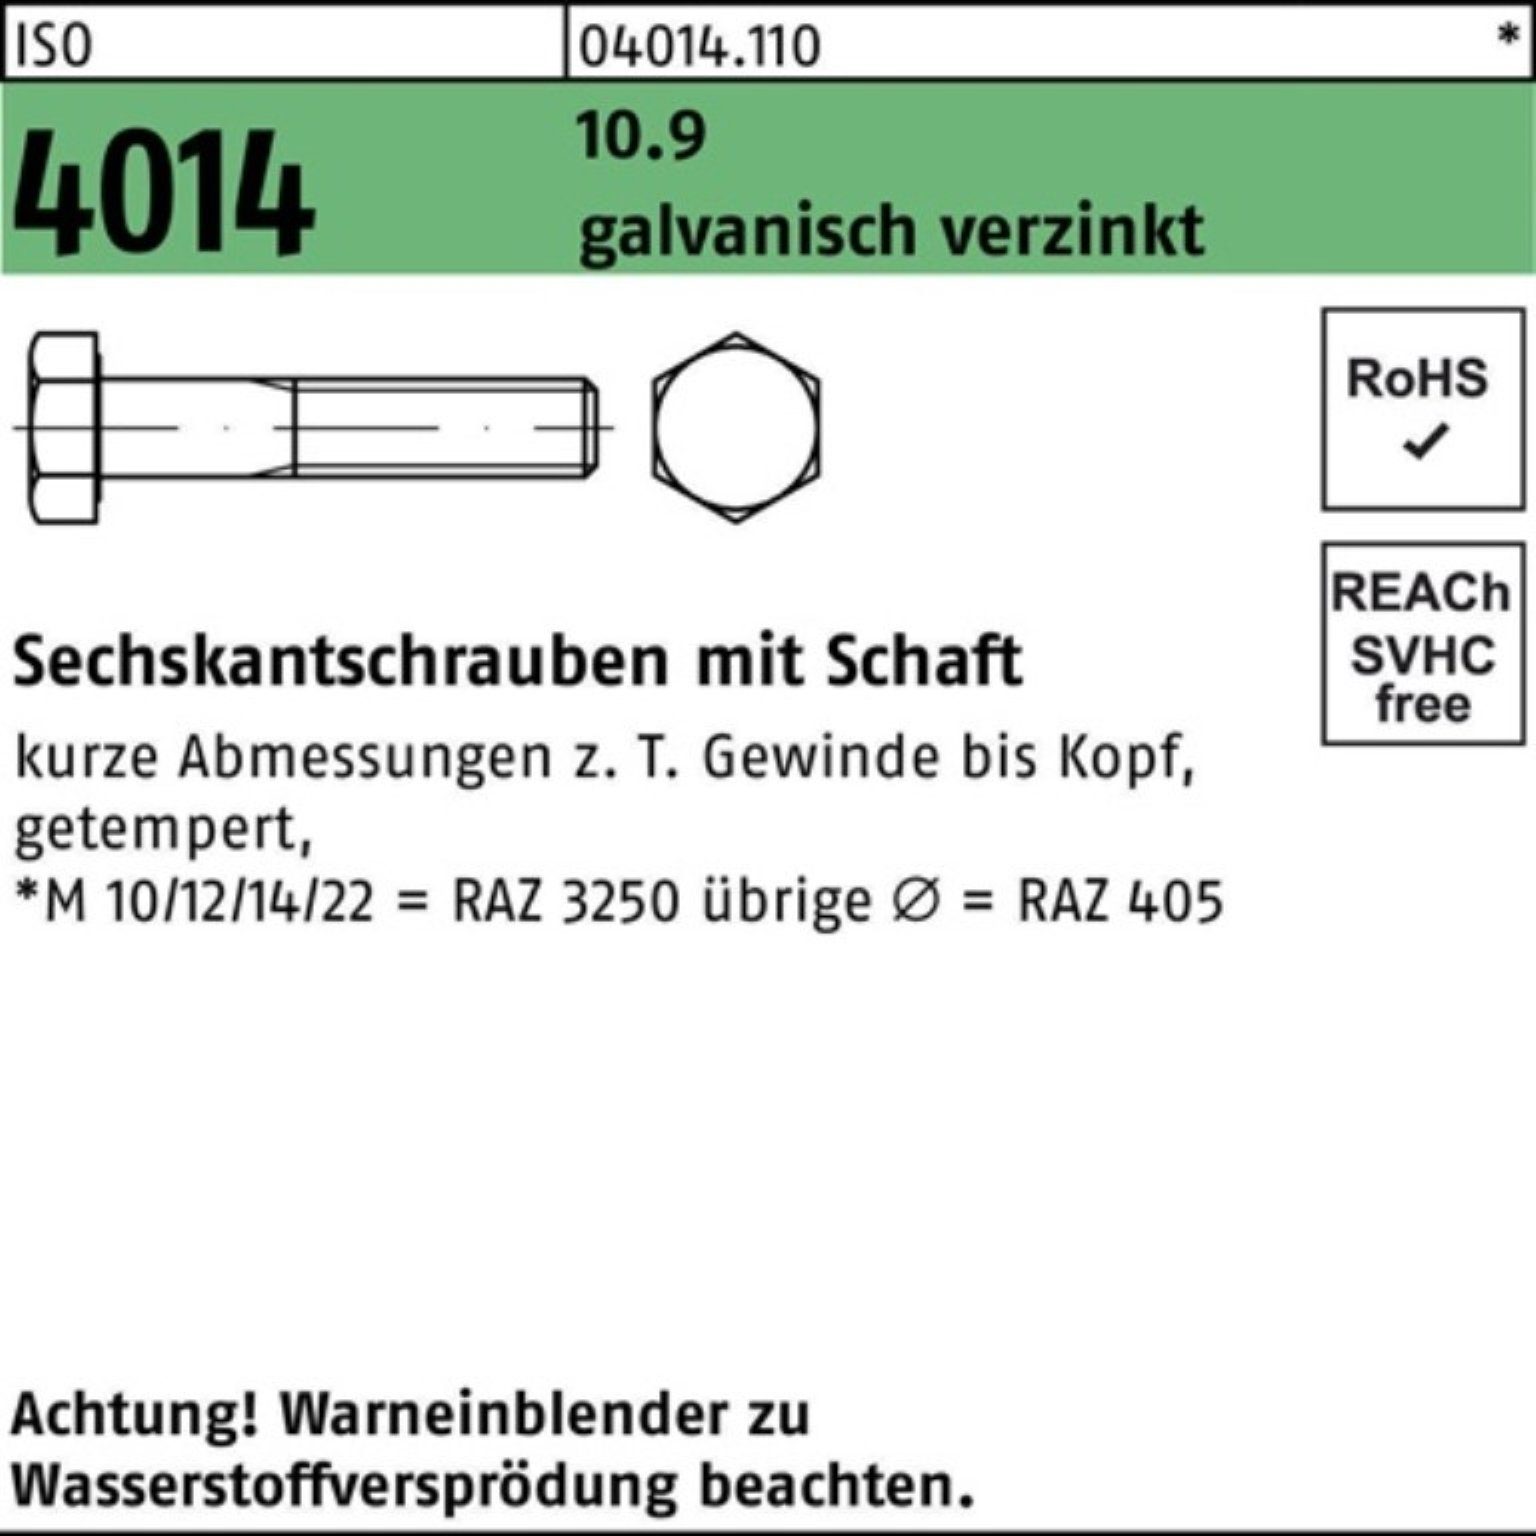 Schaft Sechskantschraube M30x ISO 100er 10.9 galv.verz. Bufab 4014 Sechskantschraube 240 Pack